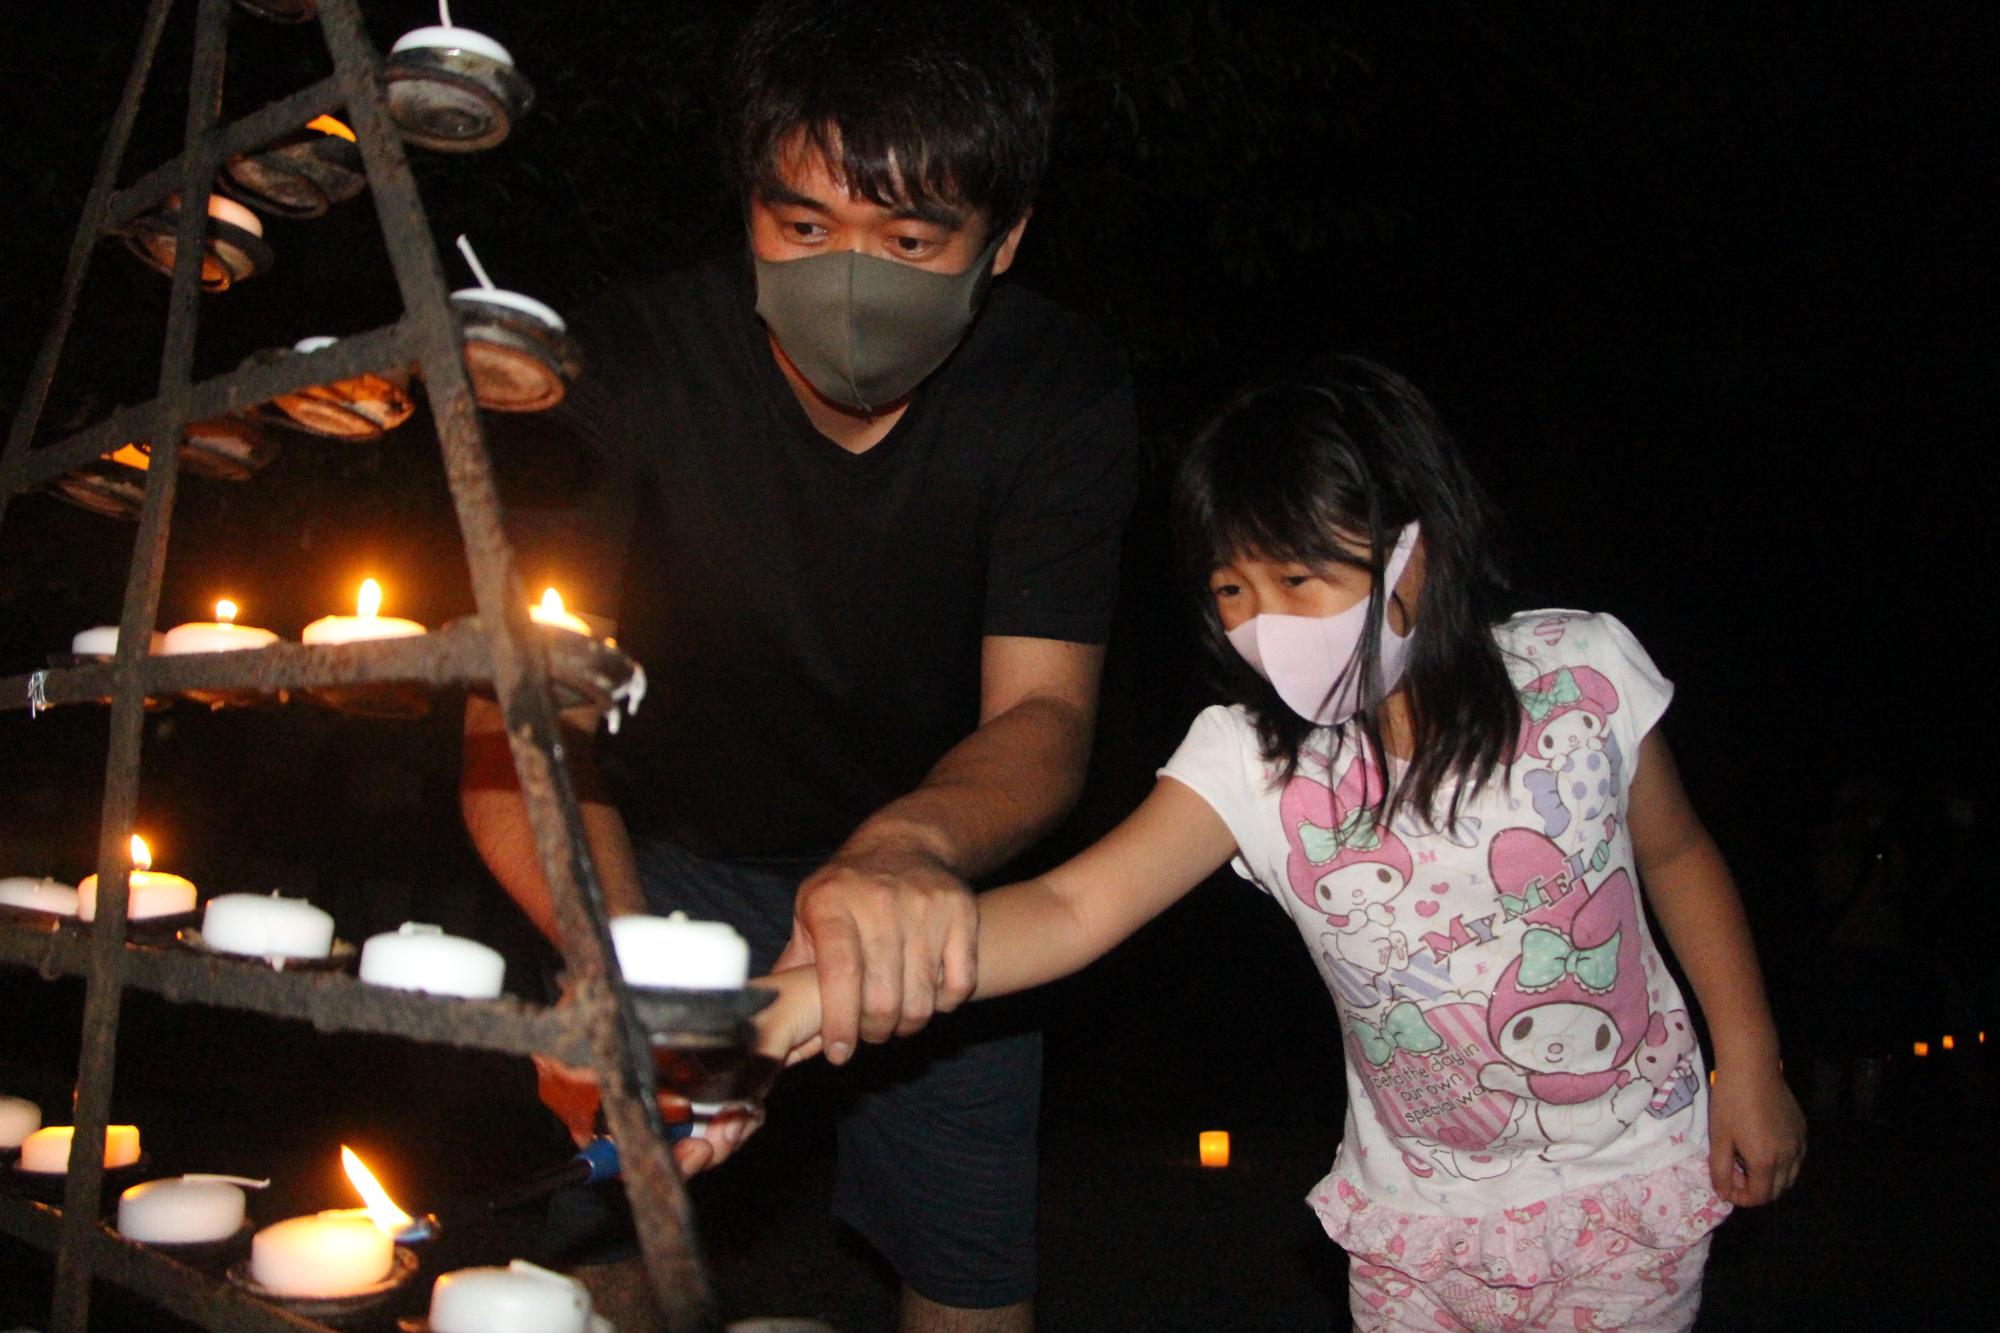 庭田神社の八朔祭りで髪の長い女の子と父親がろうそくに手を伸ばし一緒に火を灯している写真